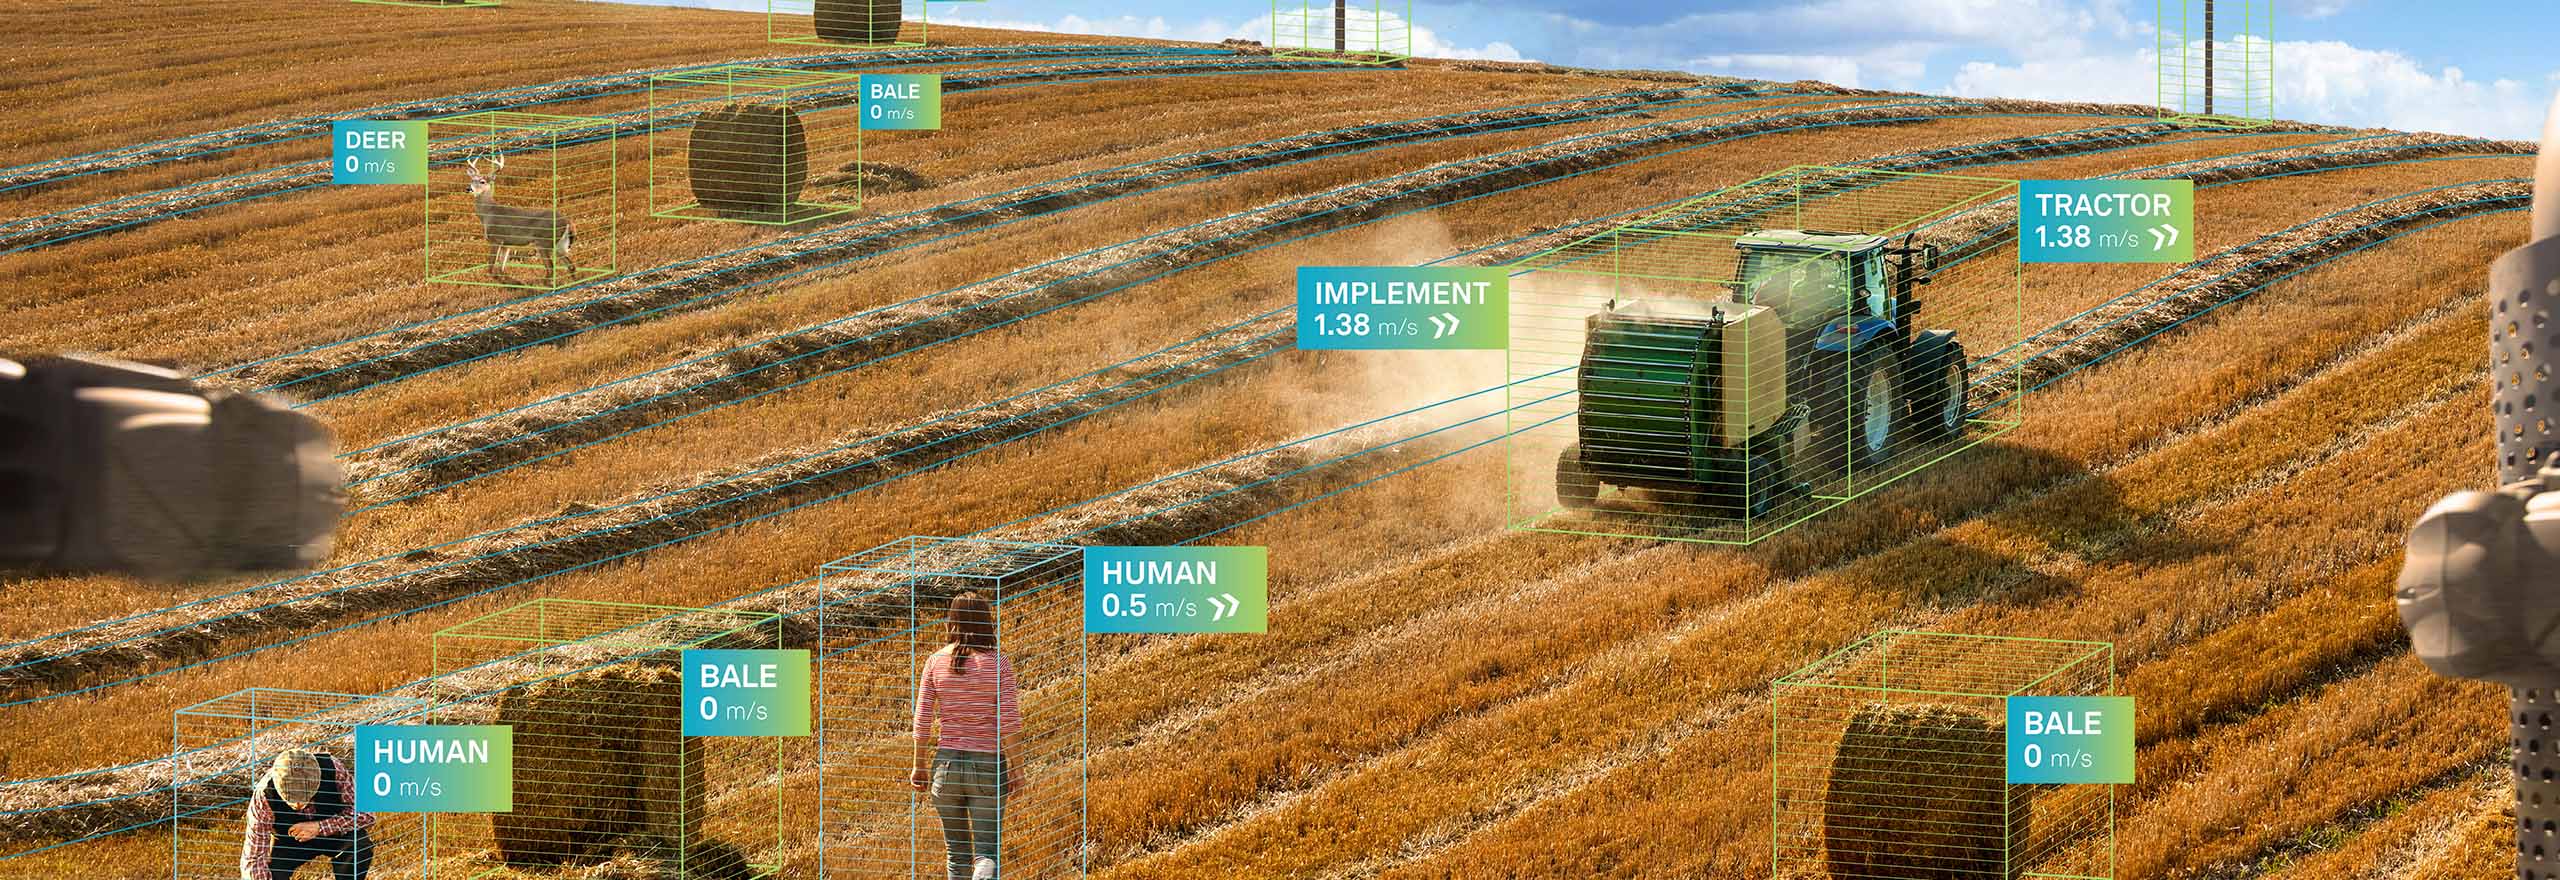 Trator autônomo da Hexagon trabalhando no campo em um ambiente agrícola inteligente